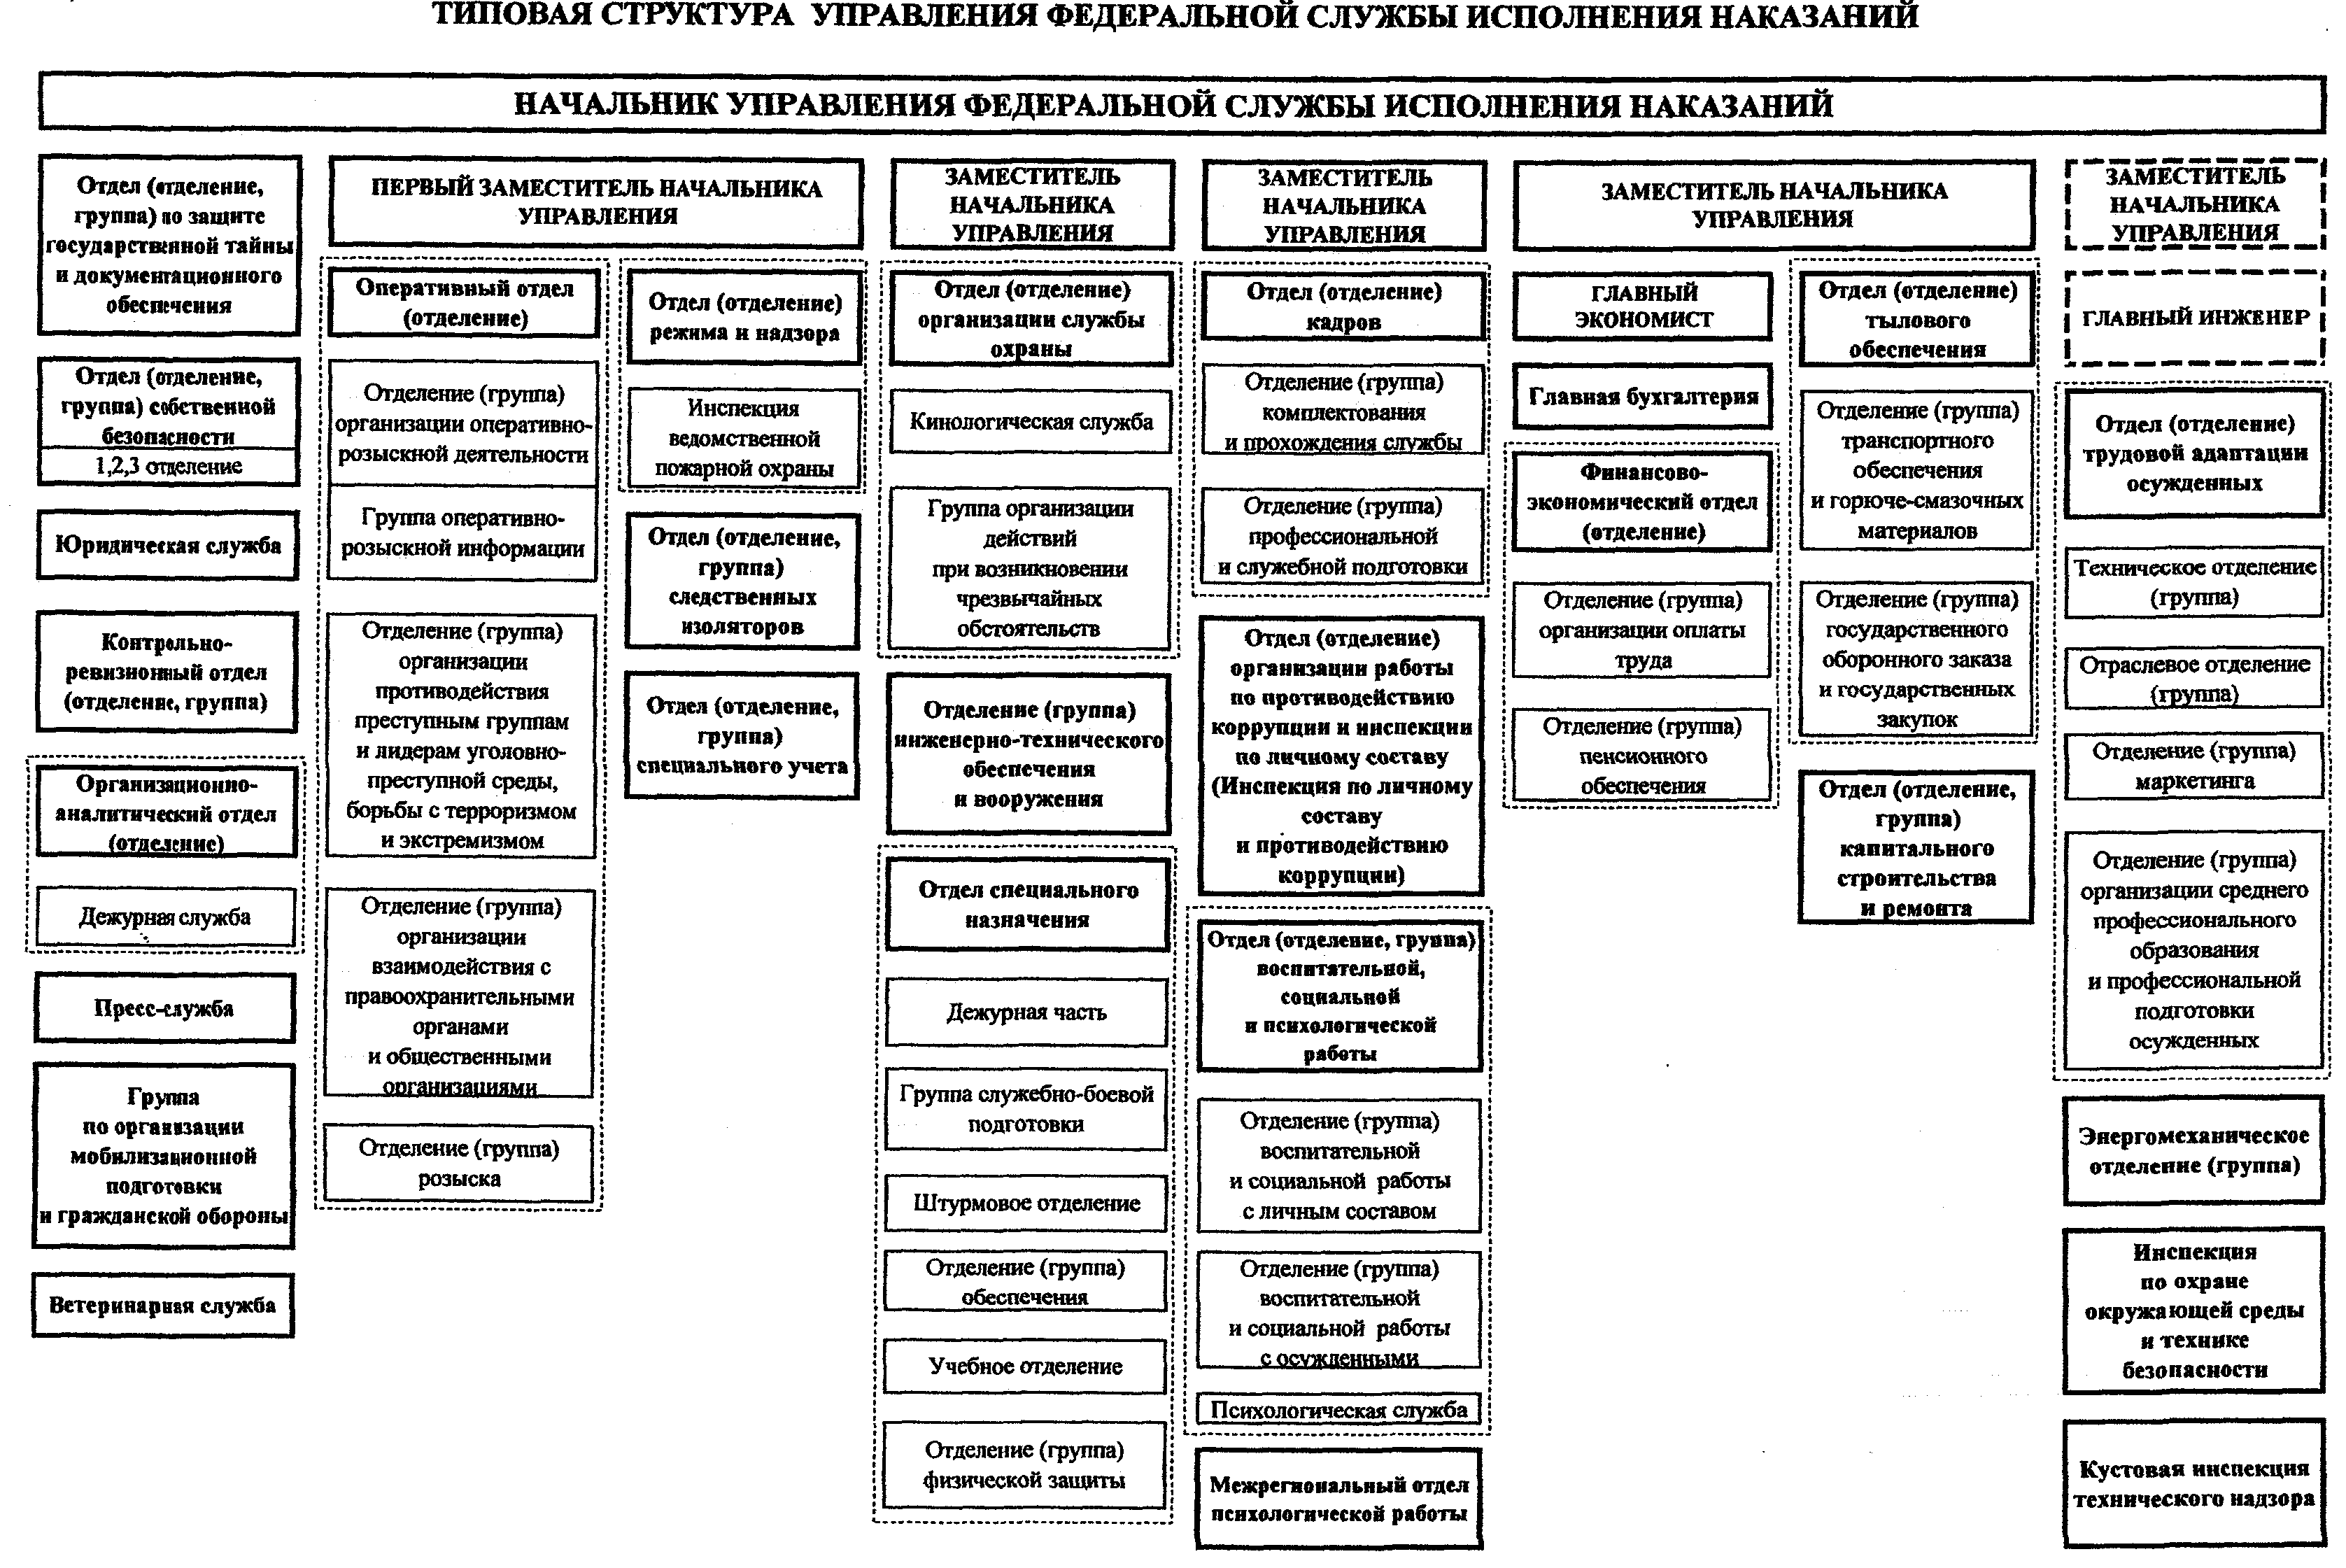 Организационная структура ФСИН РФ схема